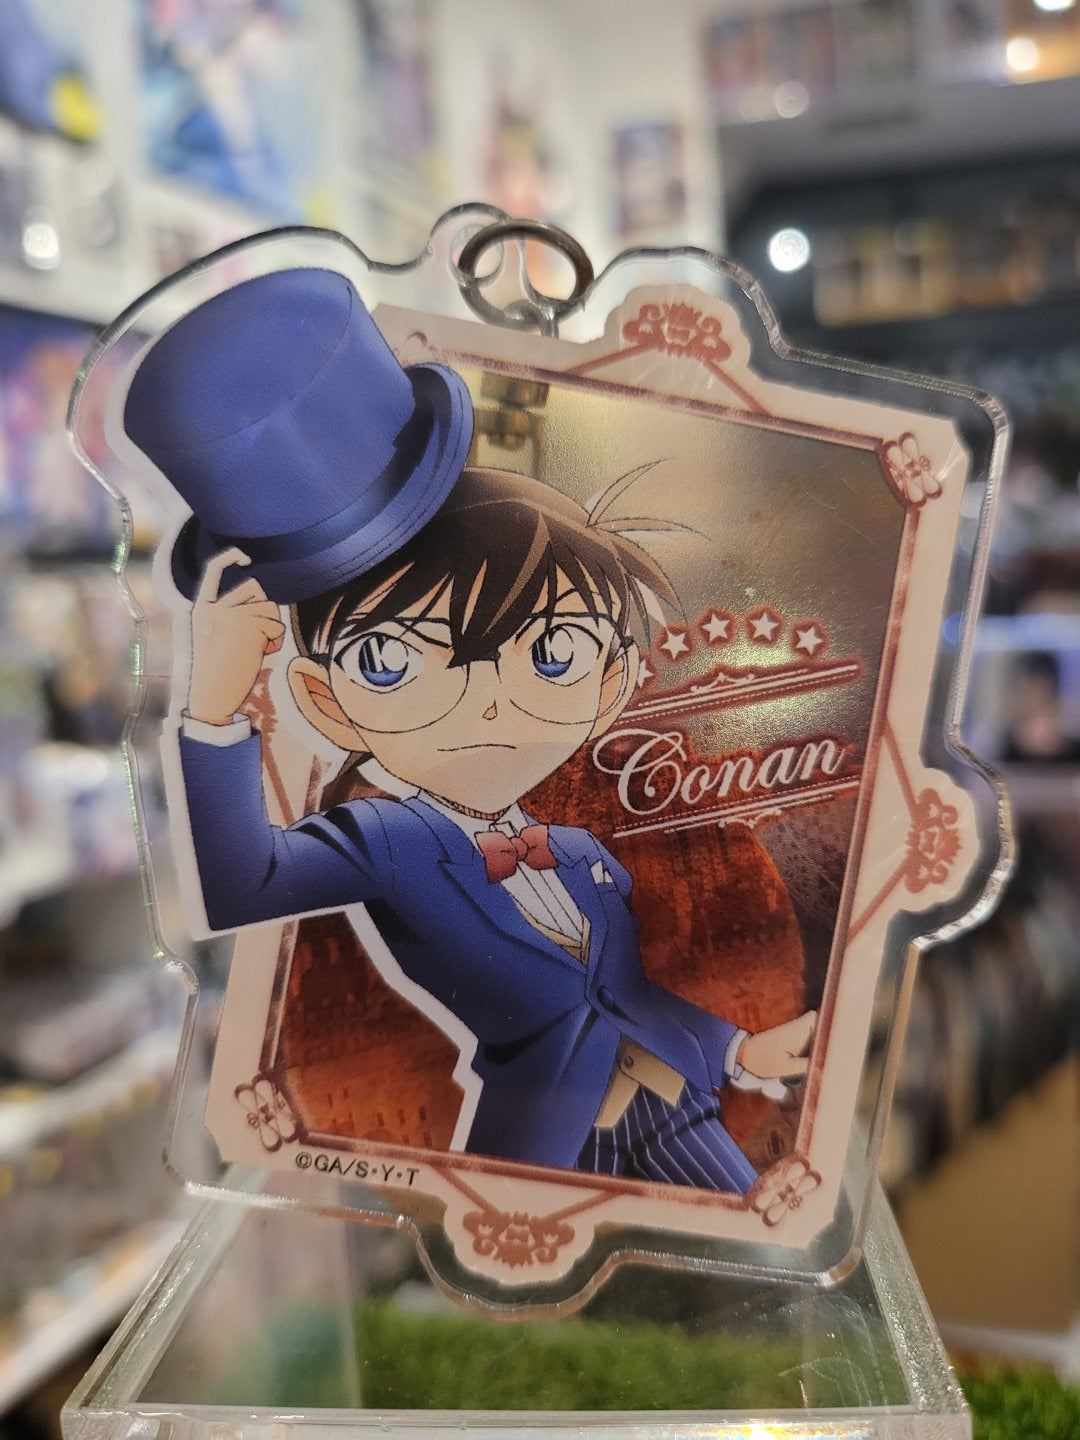 Detektiv Conan Anhänger Nippon4U